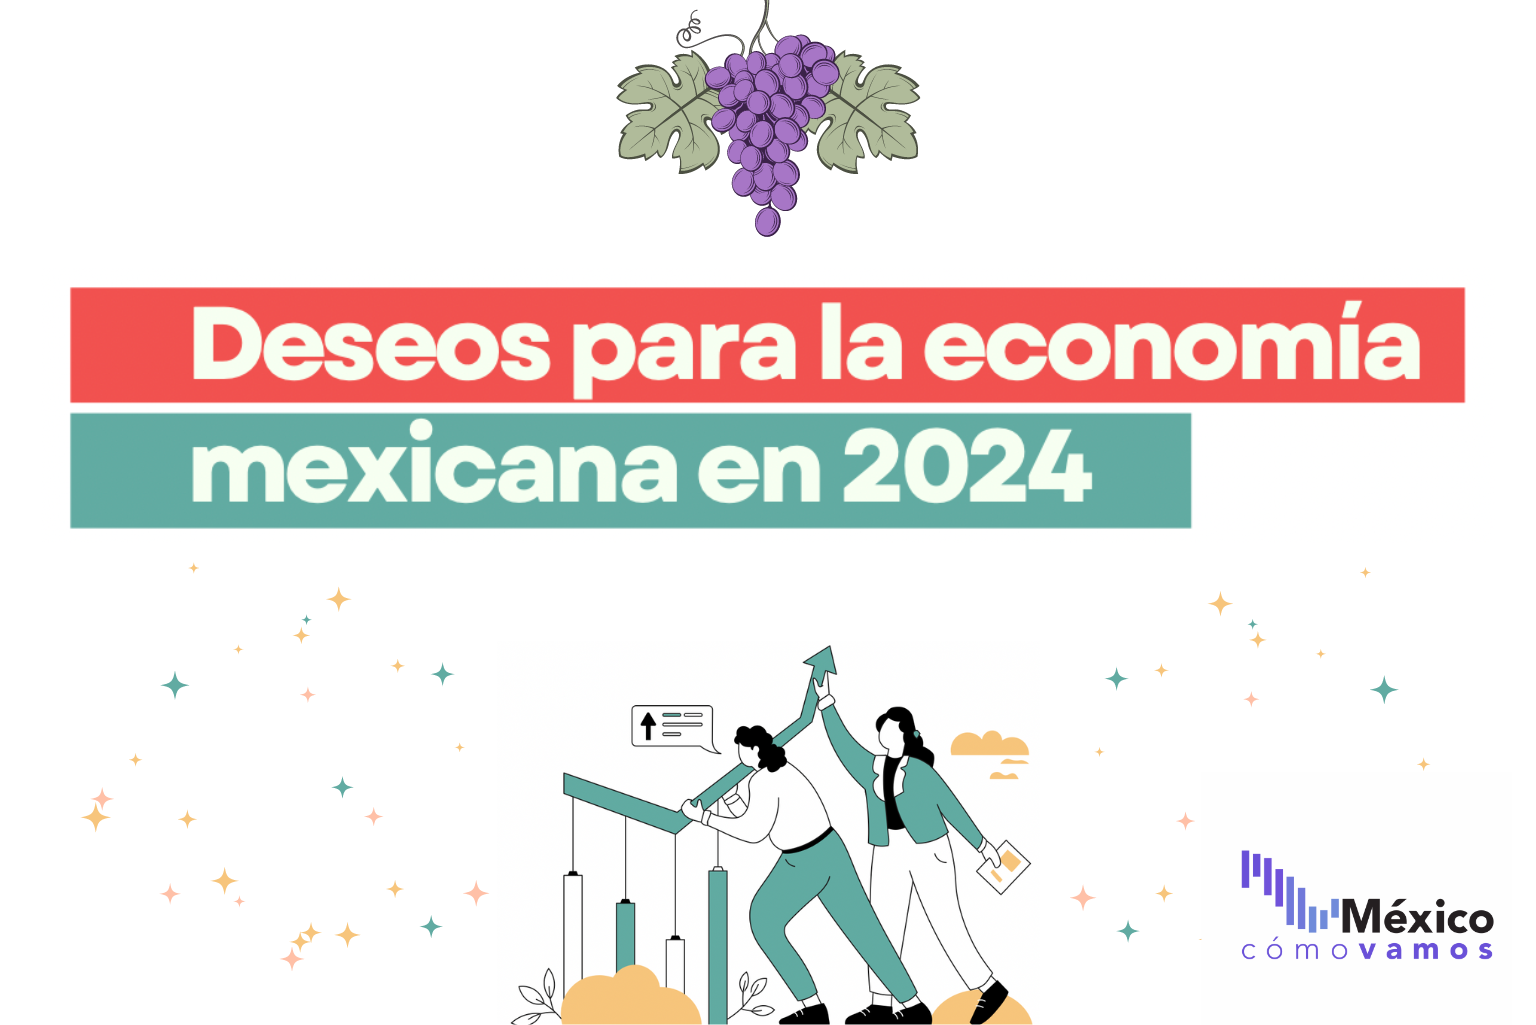 Deseos para la economía mexicana en 2024